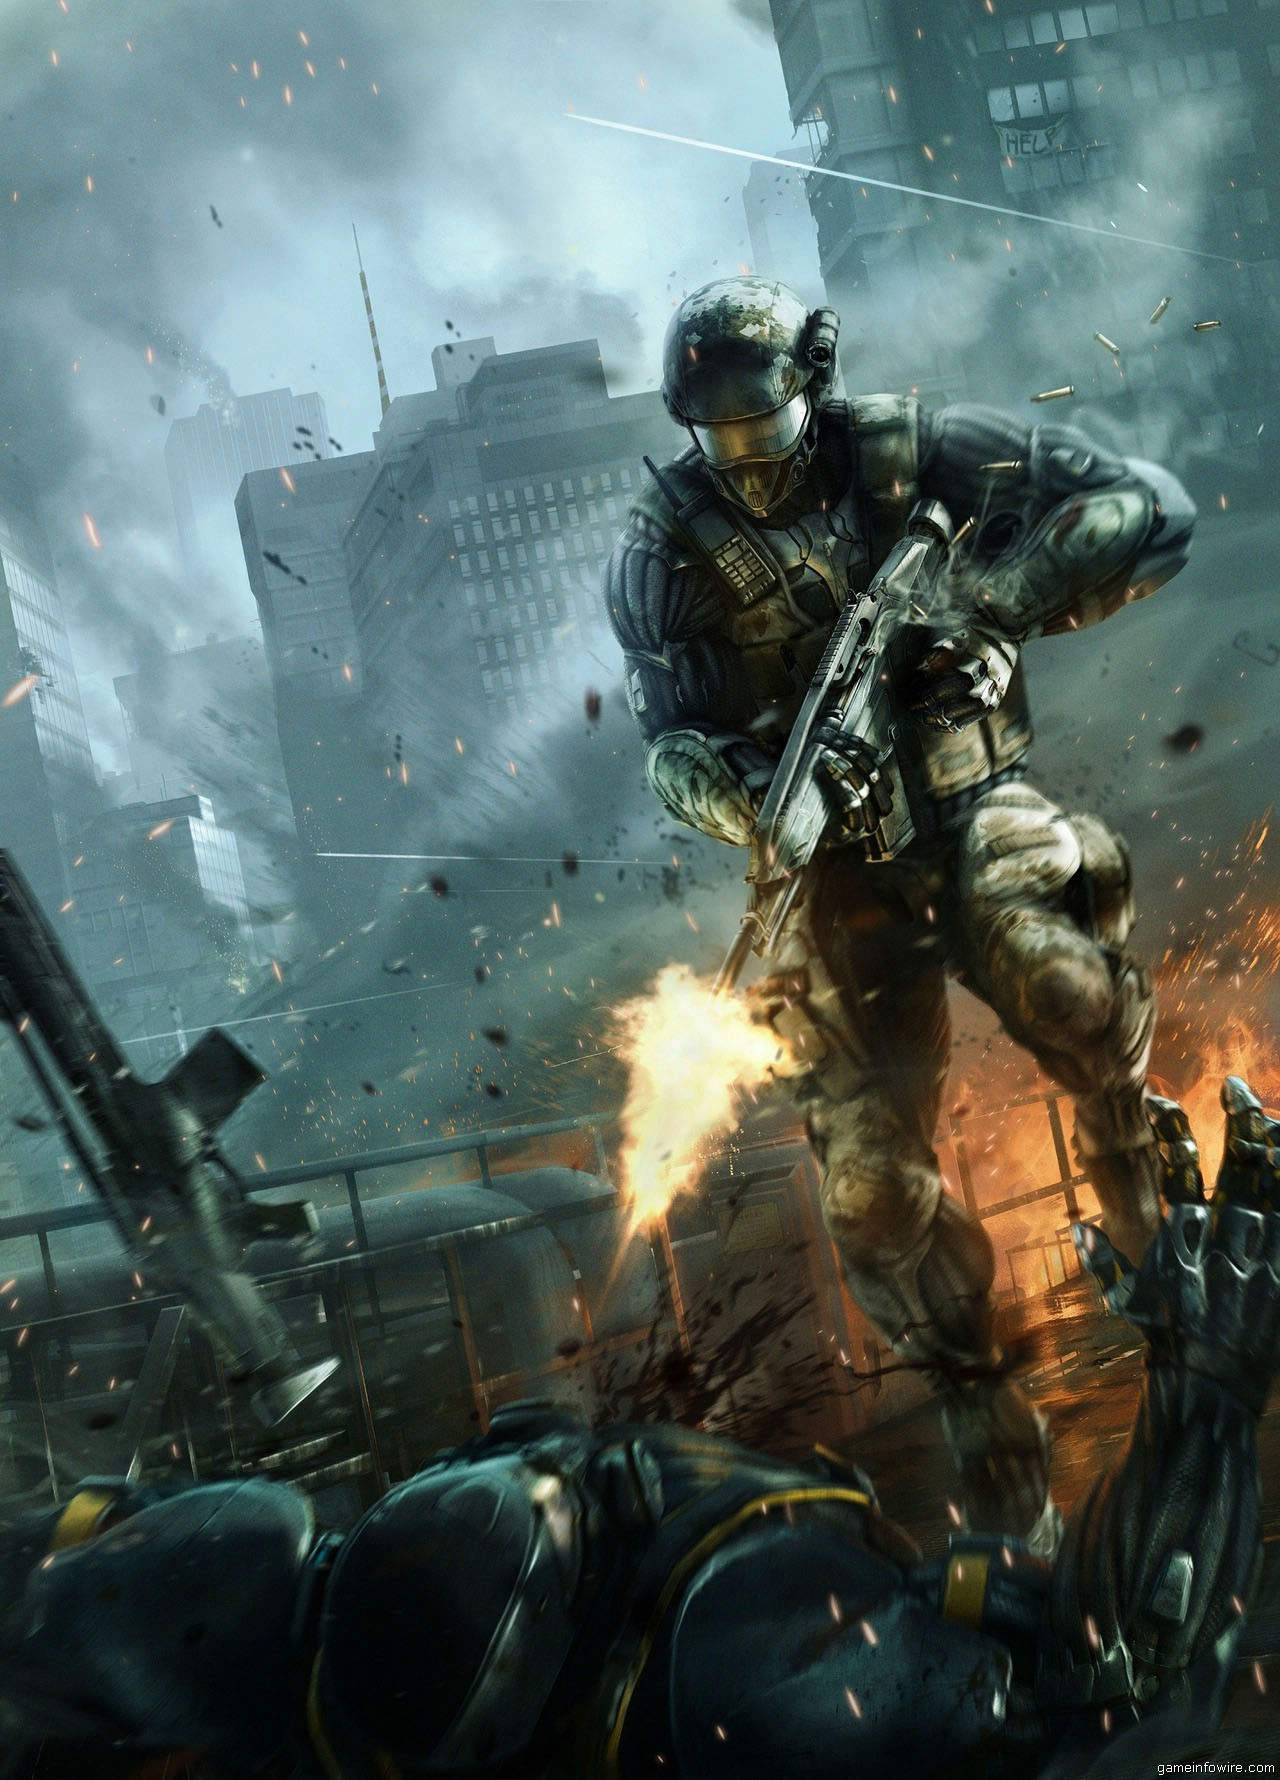 Immagine pubblicata in relazione al seguente contenuto: Crytek pubblica nuovi screenshots del suo prossimo Crysis 2 | Nome immagine: news14462_1.jpg